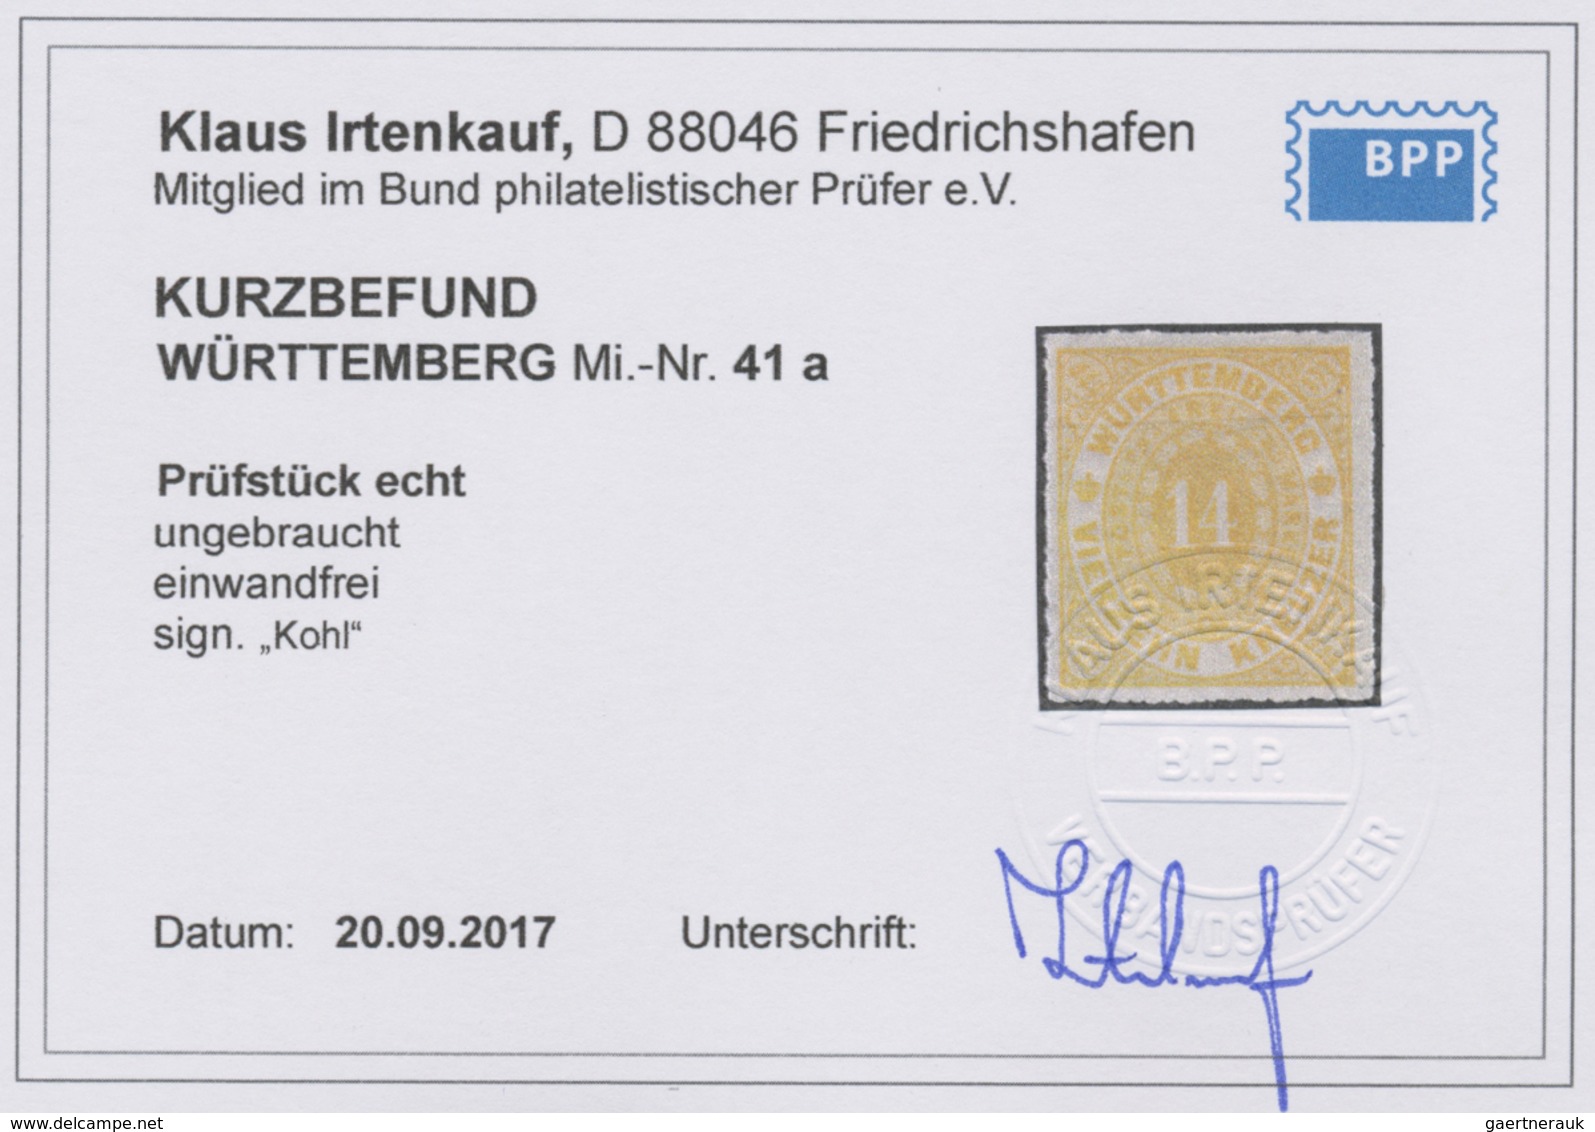 * Württemberg - Marken und Briefe: 1869, Ovalausgabe 1 Kr. bis 14 Kr. durchstochen (ausser 9 Kr.) sowi